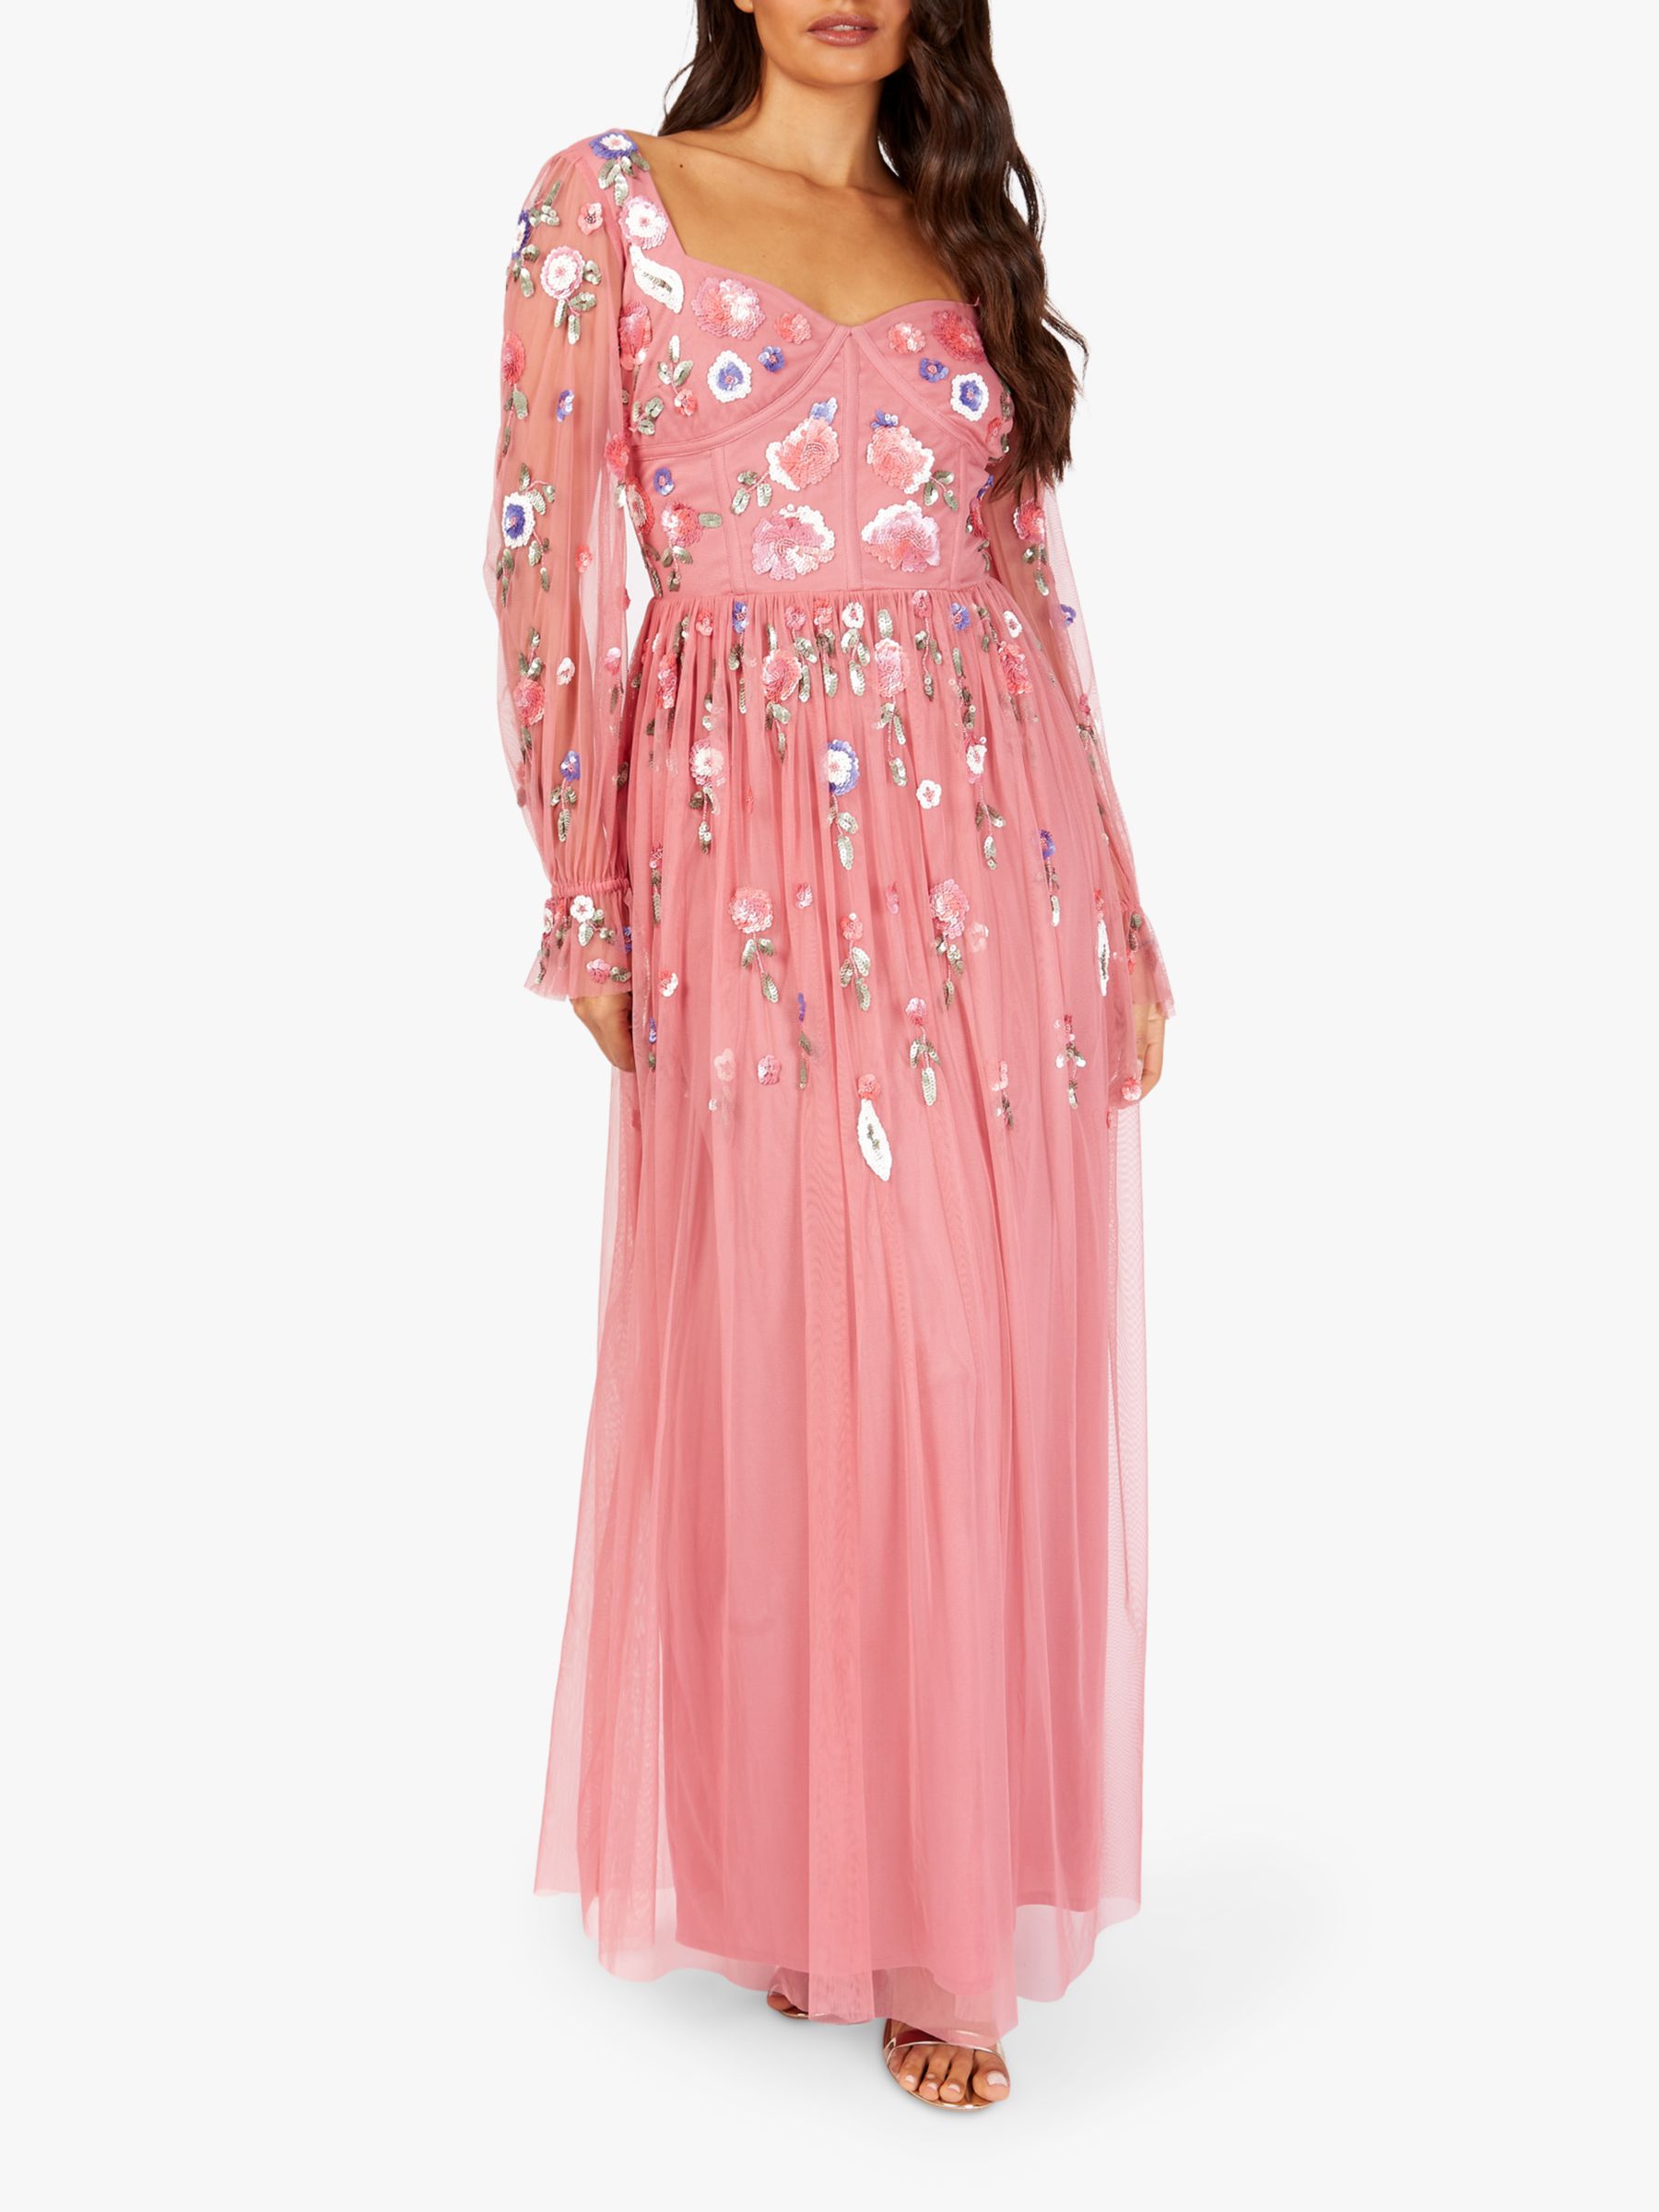 pink embellished dress